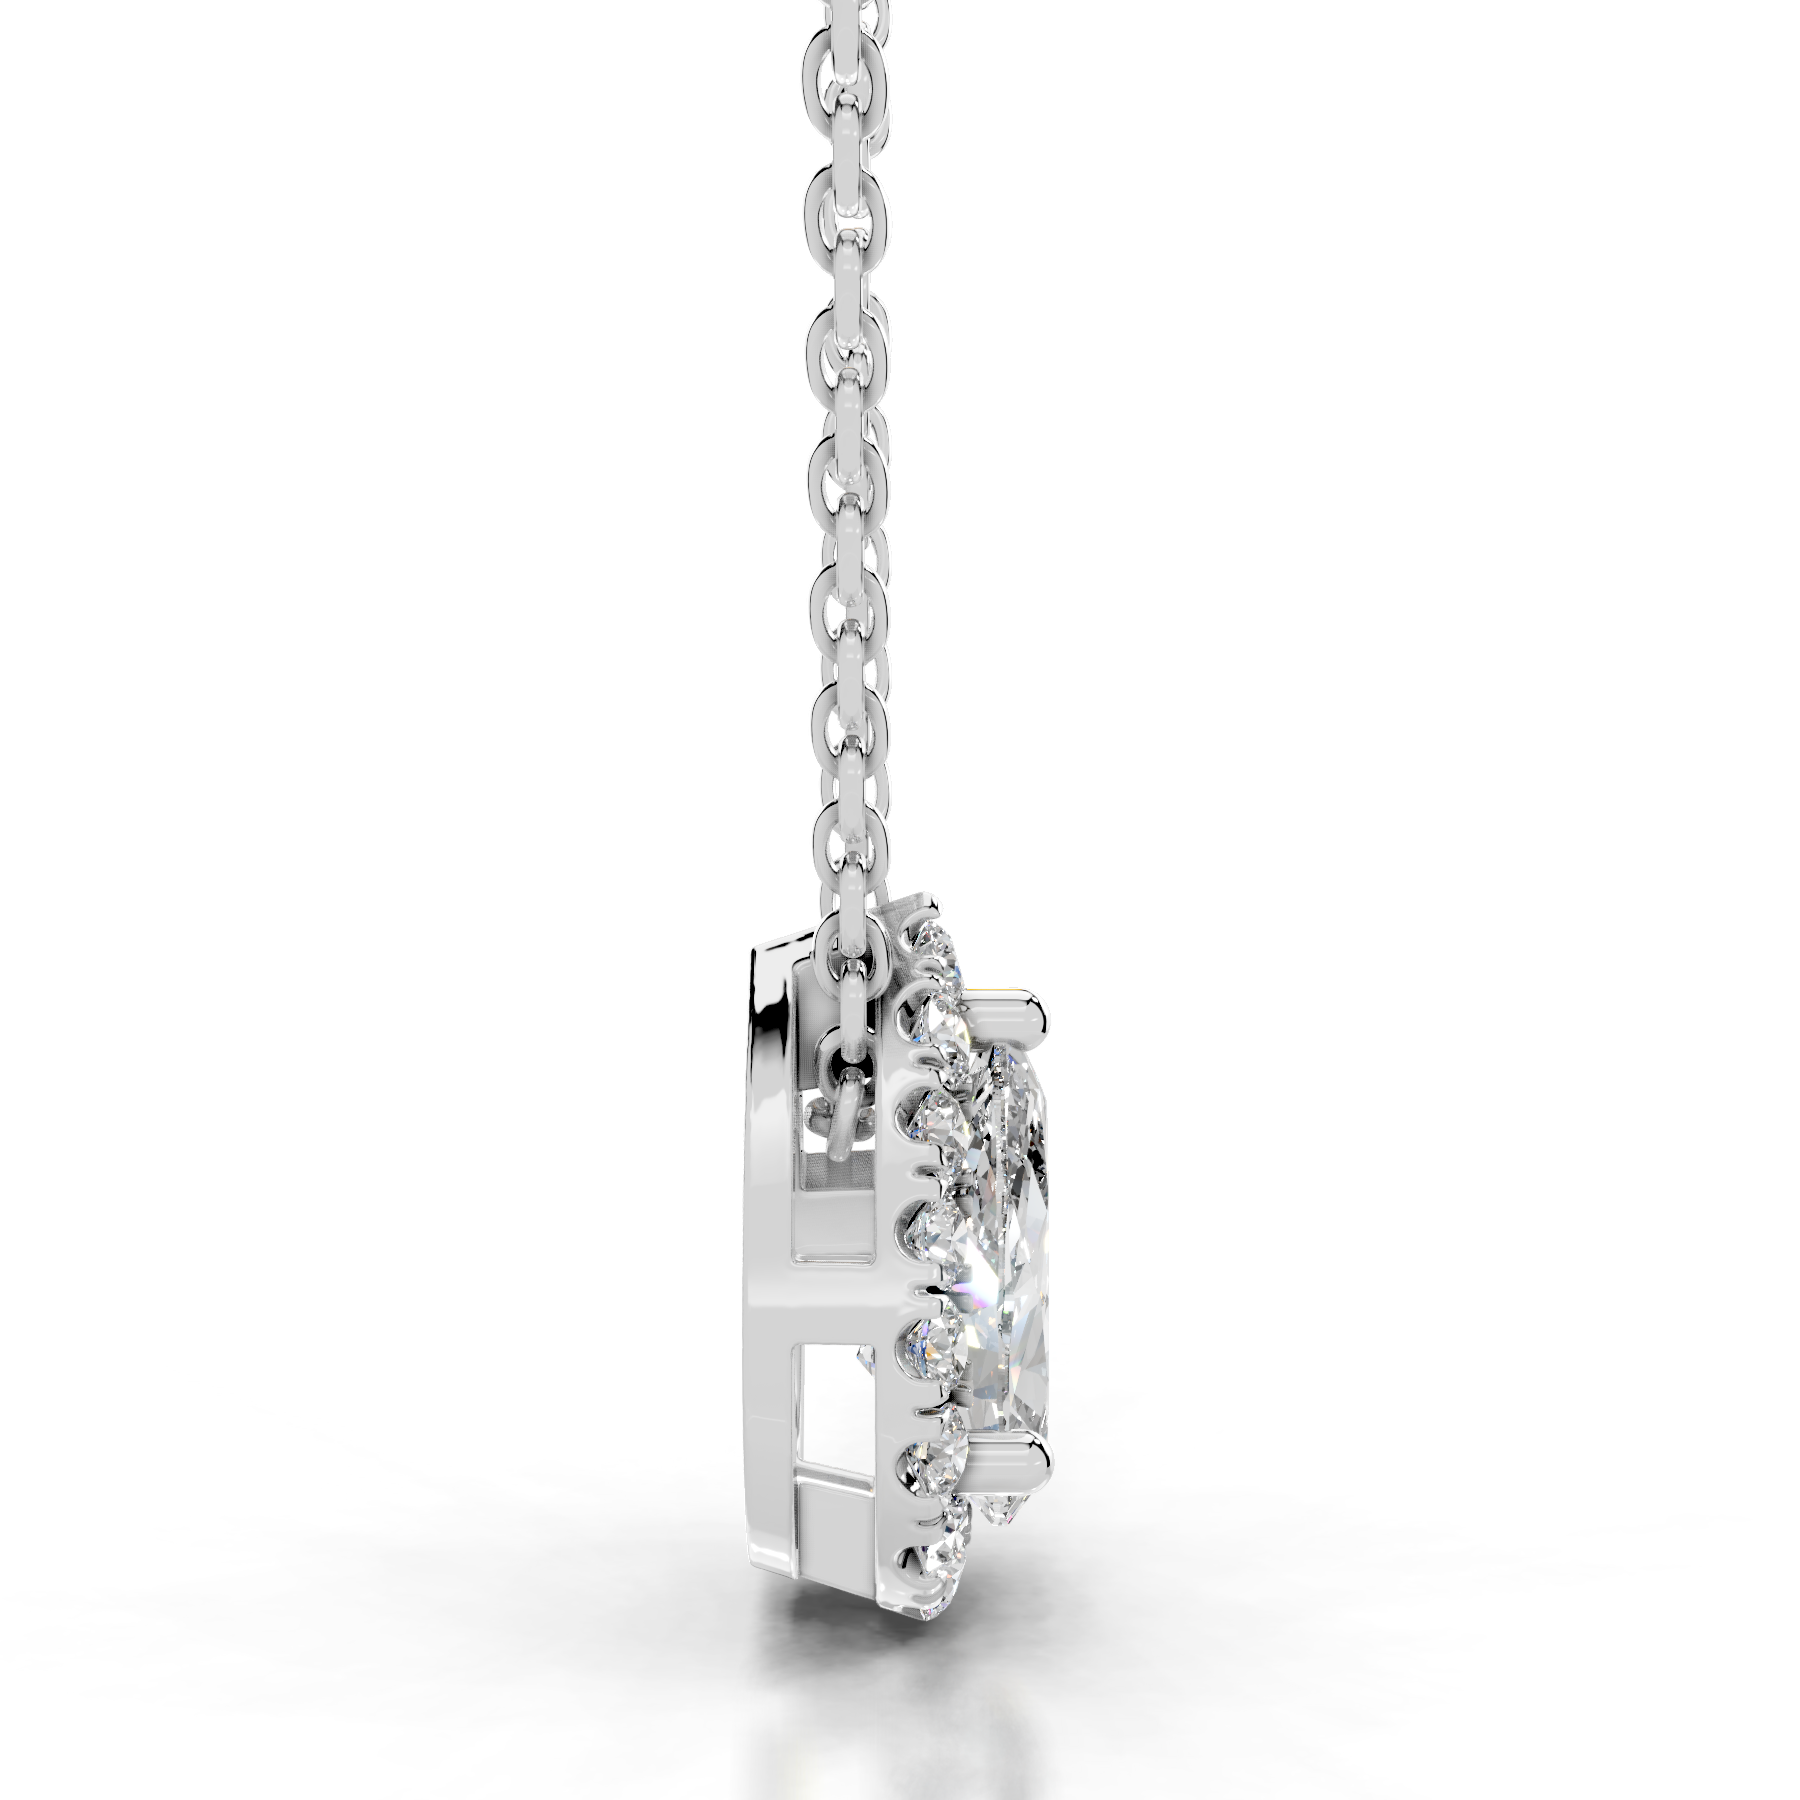 Chantal Diamond Pendant   (1.2 Carat) -14K White Gold